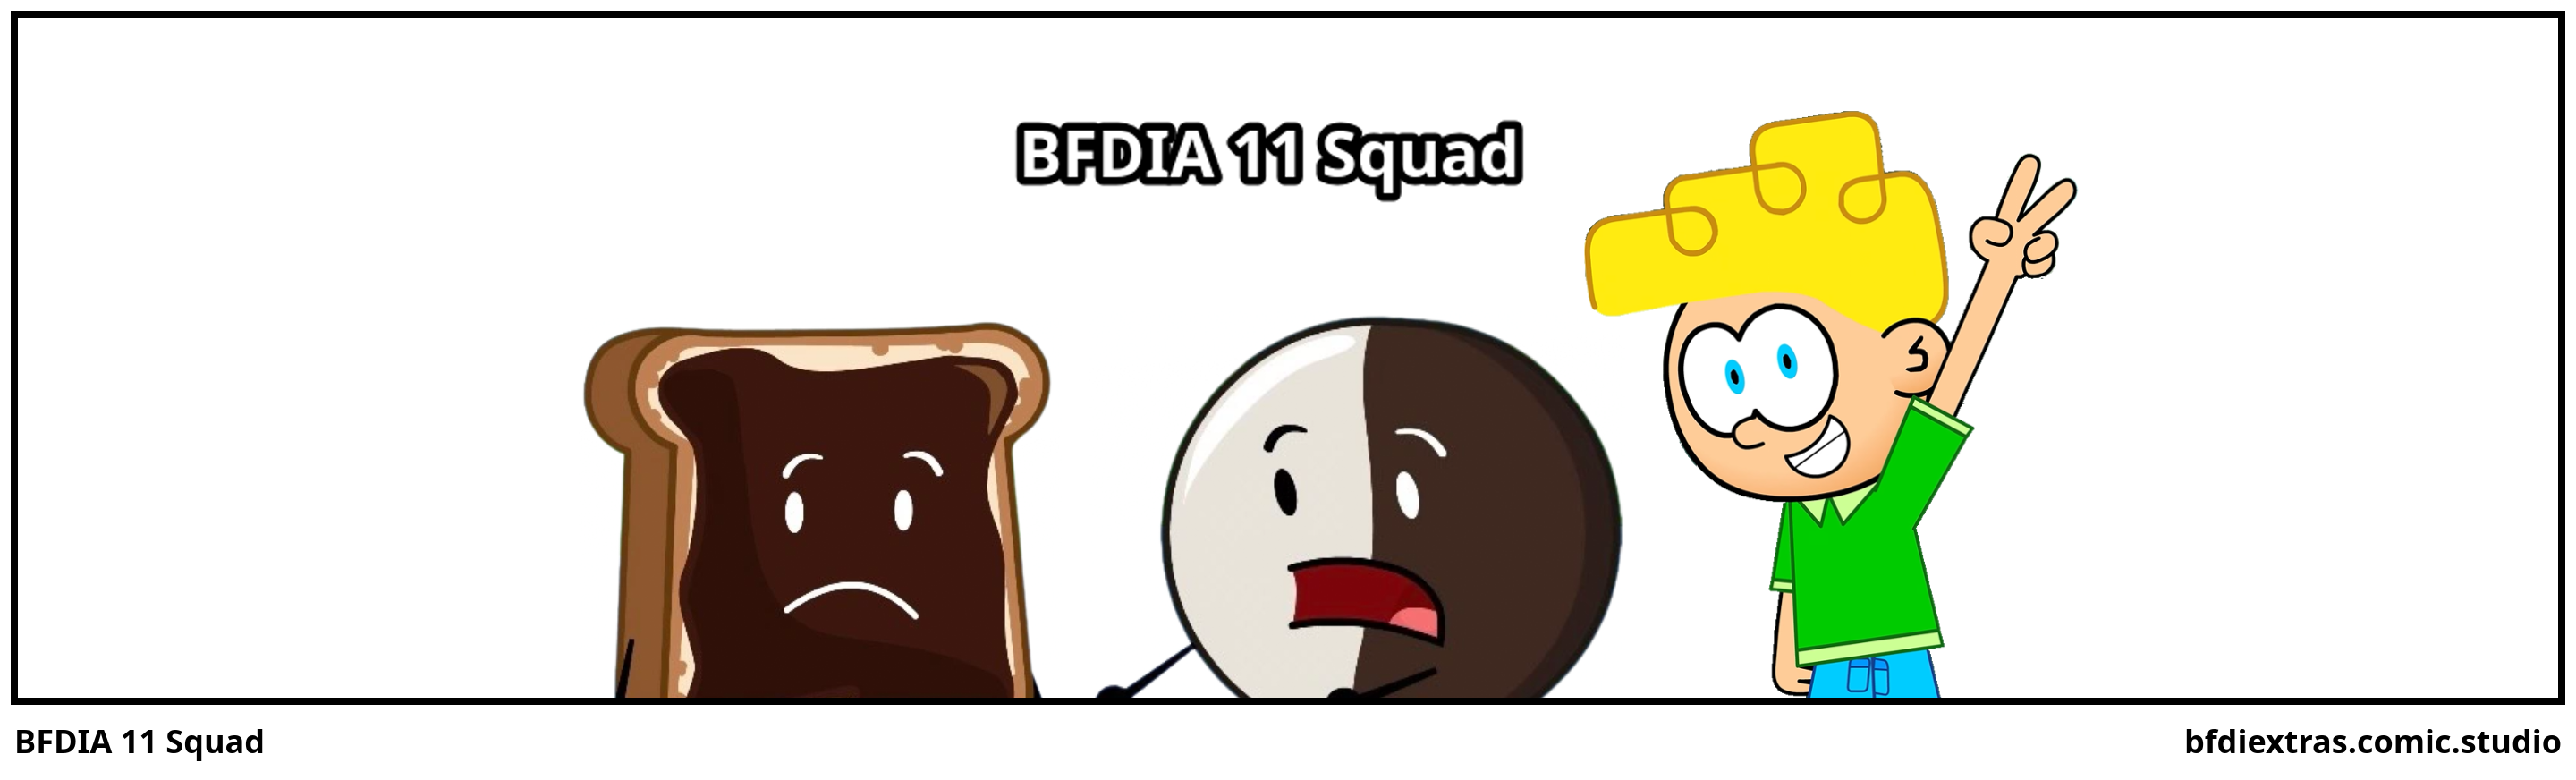 BFDIA 11 Squad